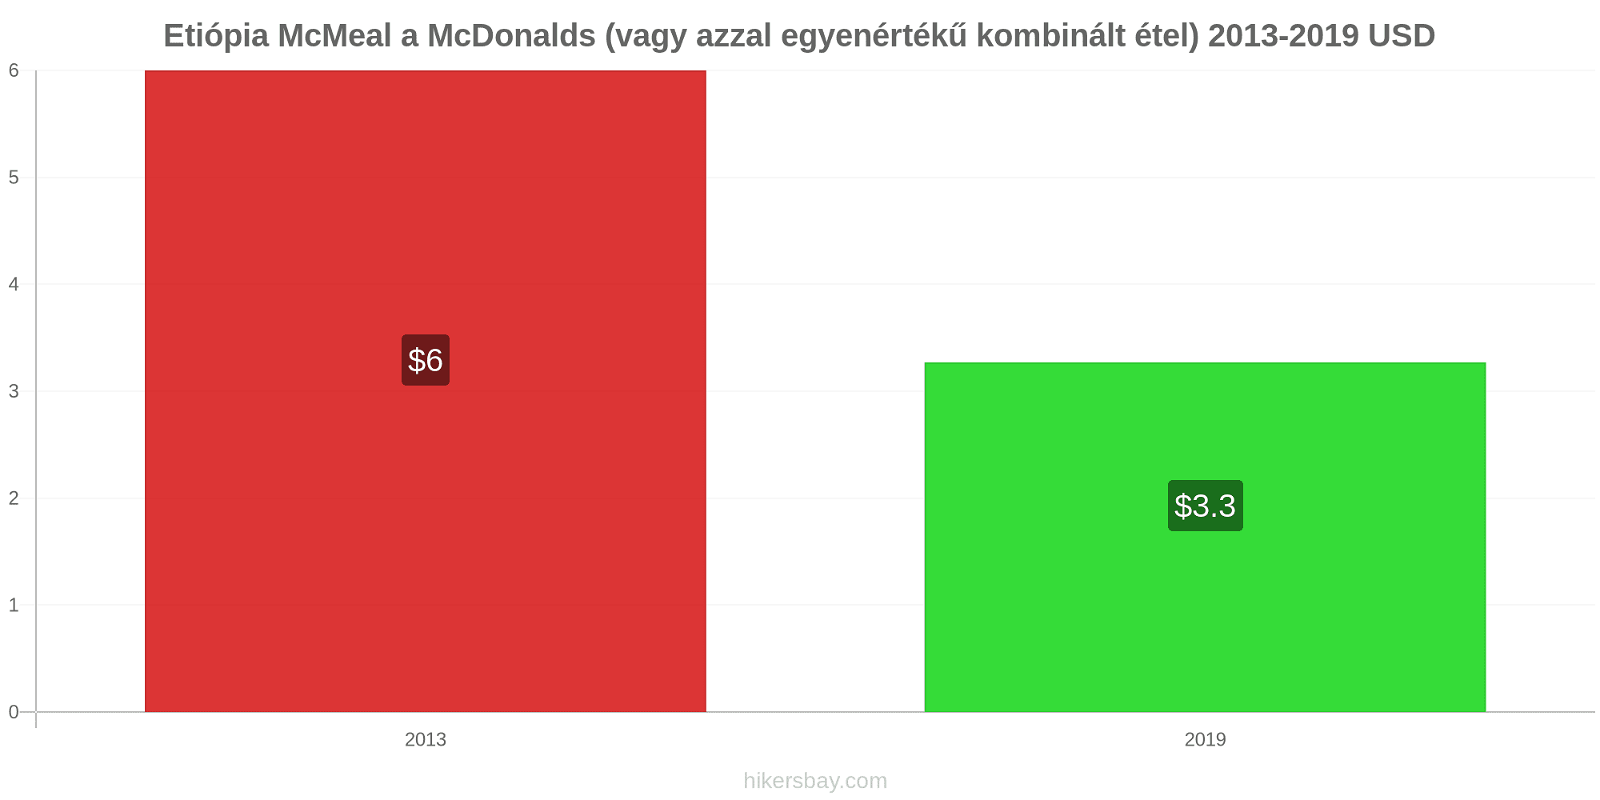 Etiópia árváltozások McMeal a McDonalds (vagy azzal egyenértékű kombinált étel) hikersbay.com